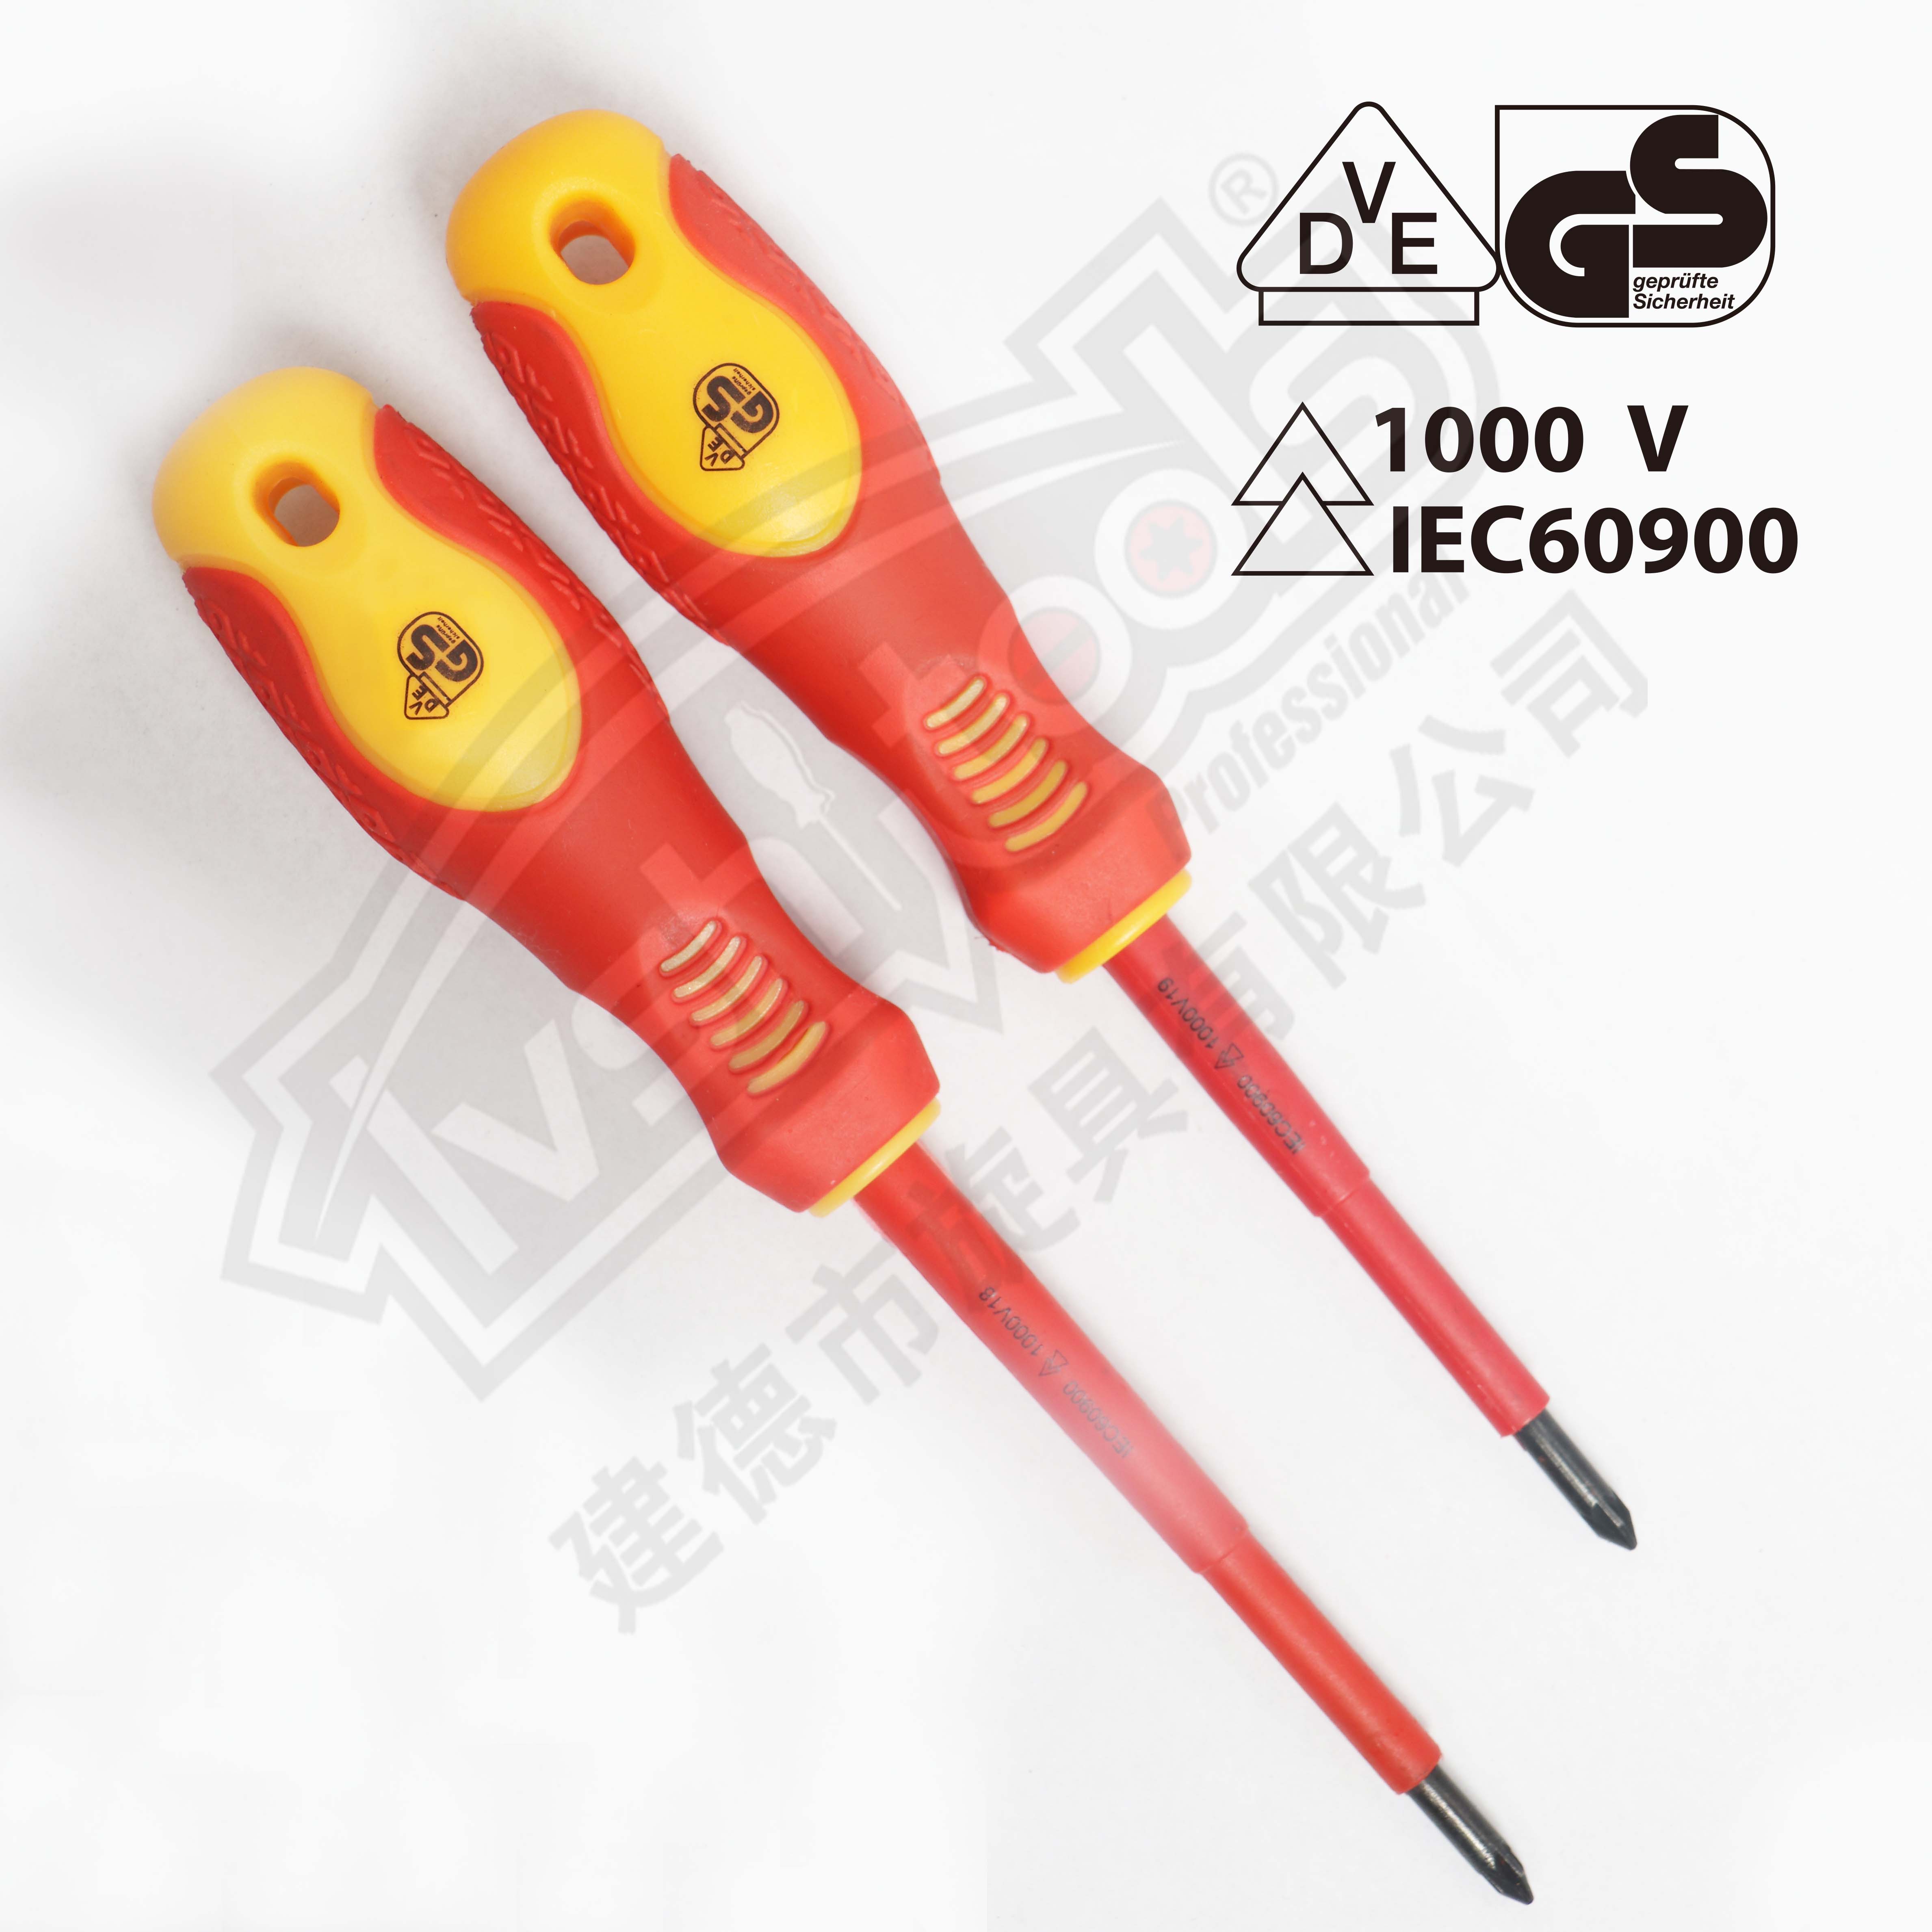 2PCS VDE screwdriver